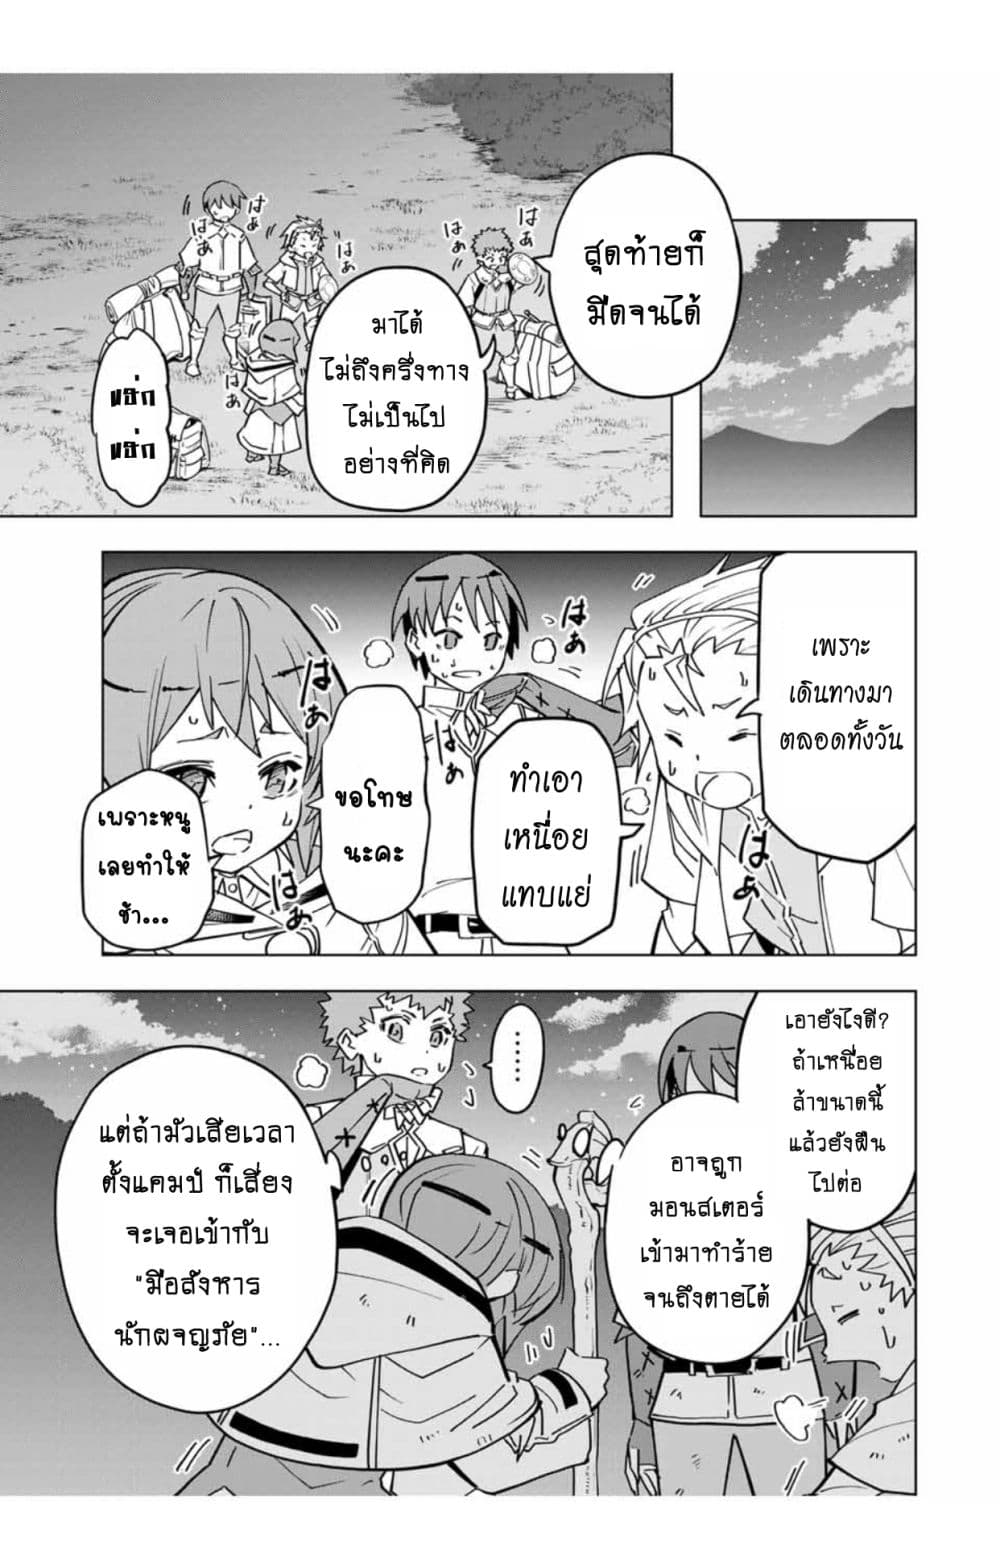 อ่านการ์ตูน Shinjiteita Nakama Tachi Ni Dungeon Okuchi De Korosare Kaketa ga Gift 『Mugen Gacha』 De Level 9999 No Nakama Tachi Wo Te Ni Irete Moto Party Member To Sekai Ni Fukushu & 『Zama A!』 Shimasu! 17 ภาพที่ 6